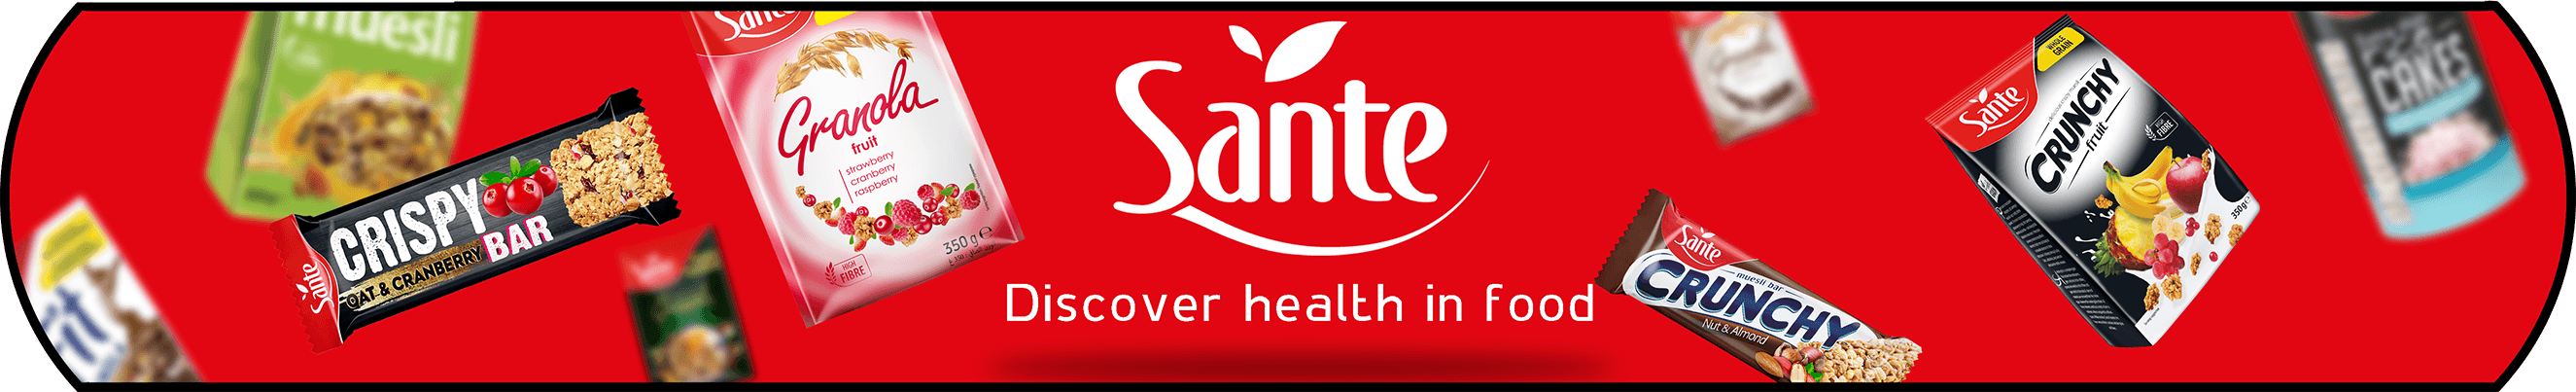 Sante Light Snacks Banner